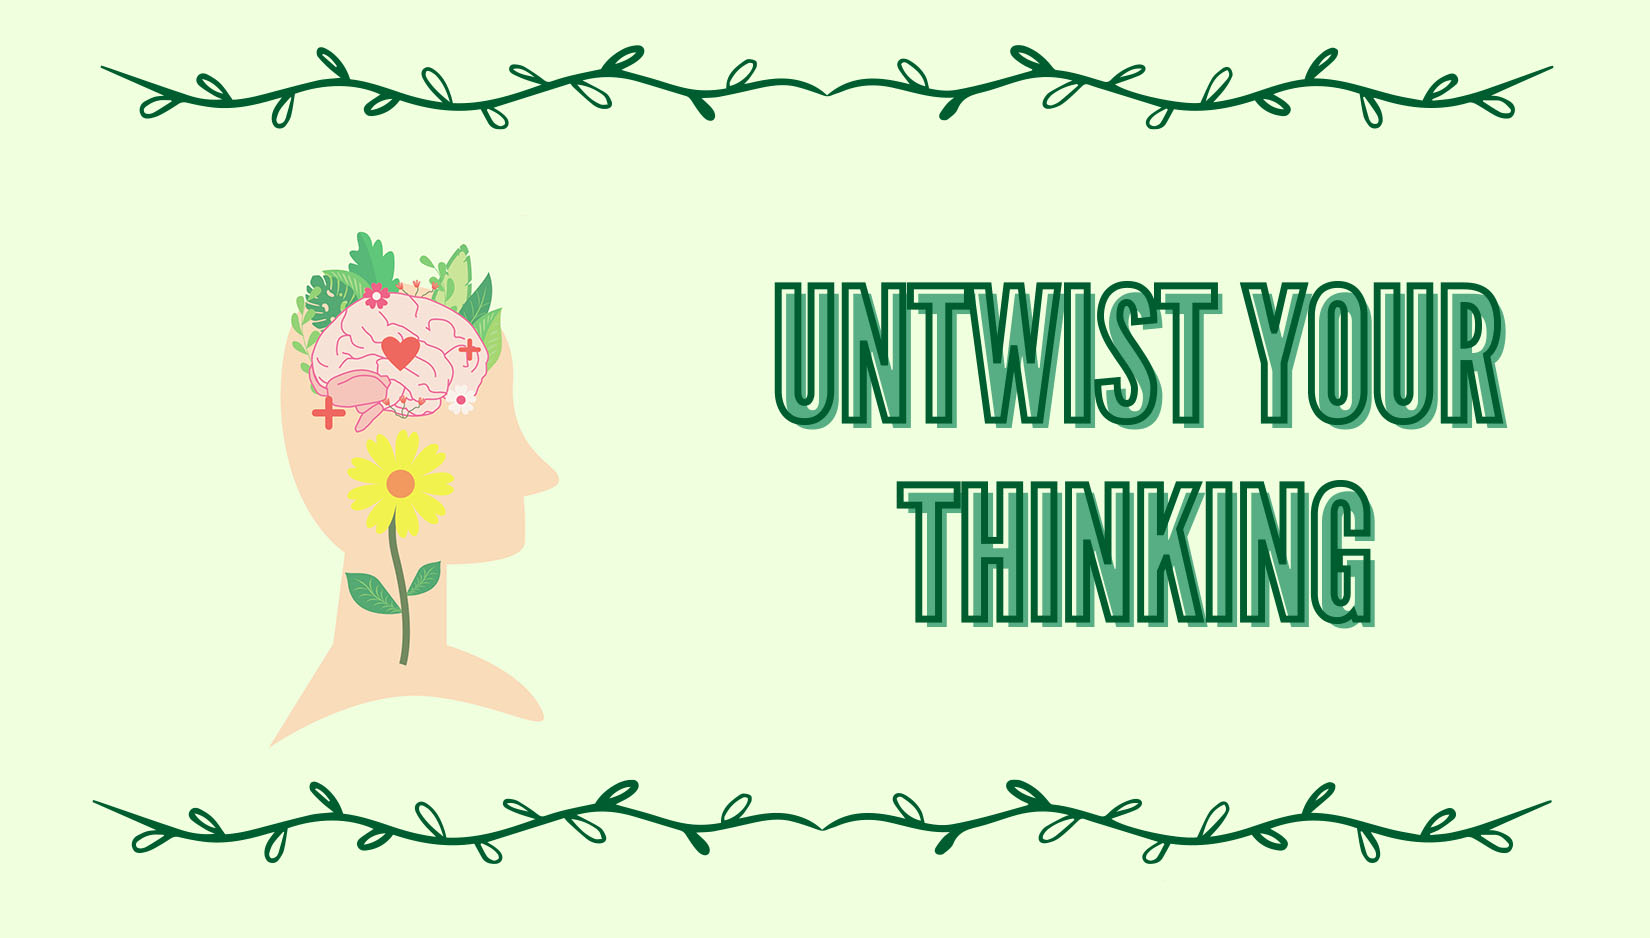 Untwist your thinking